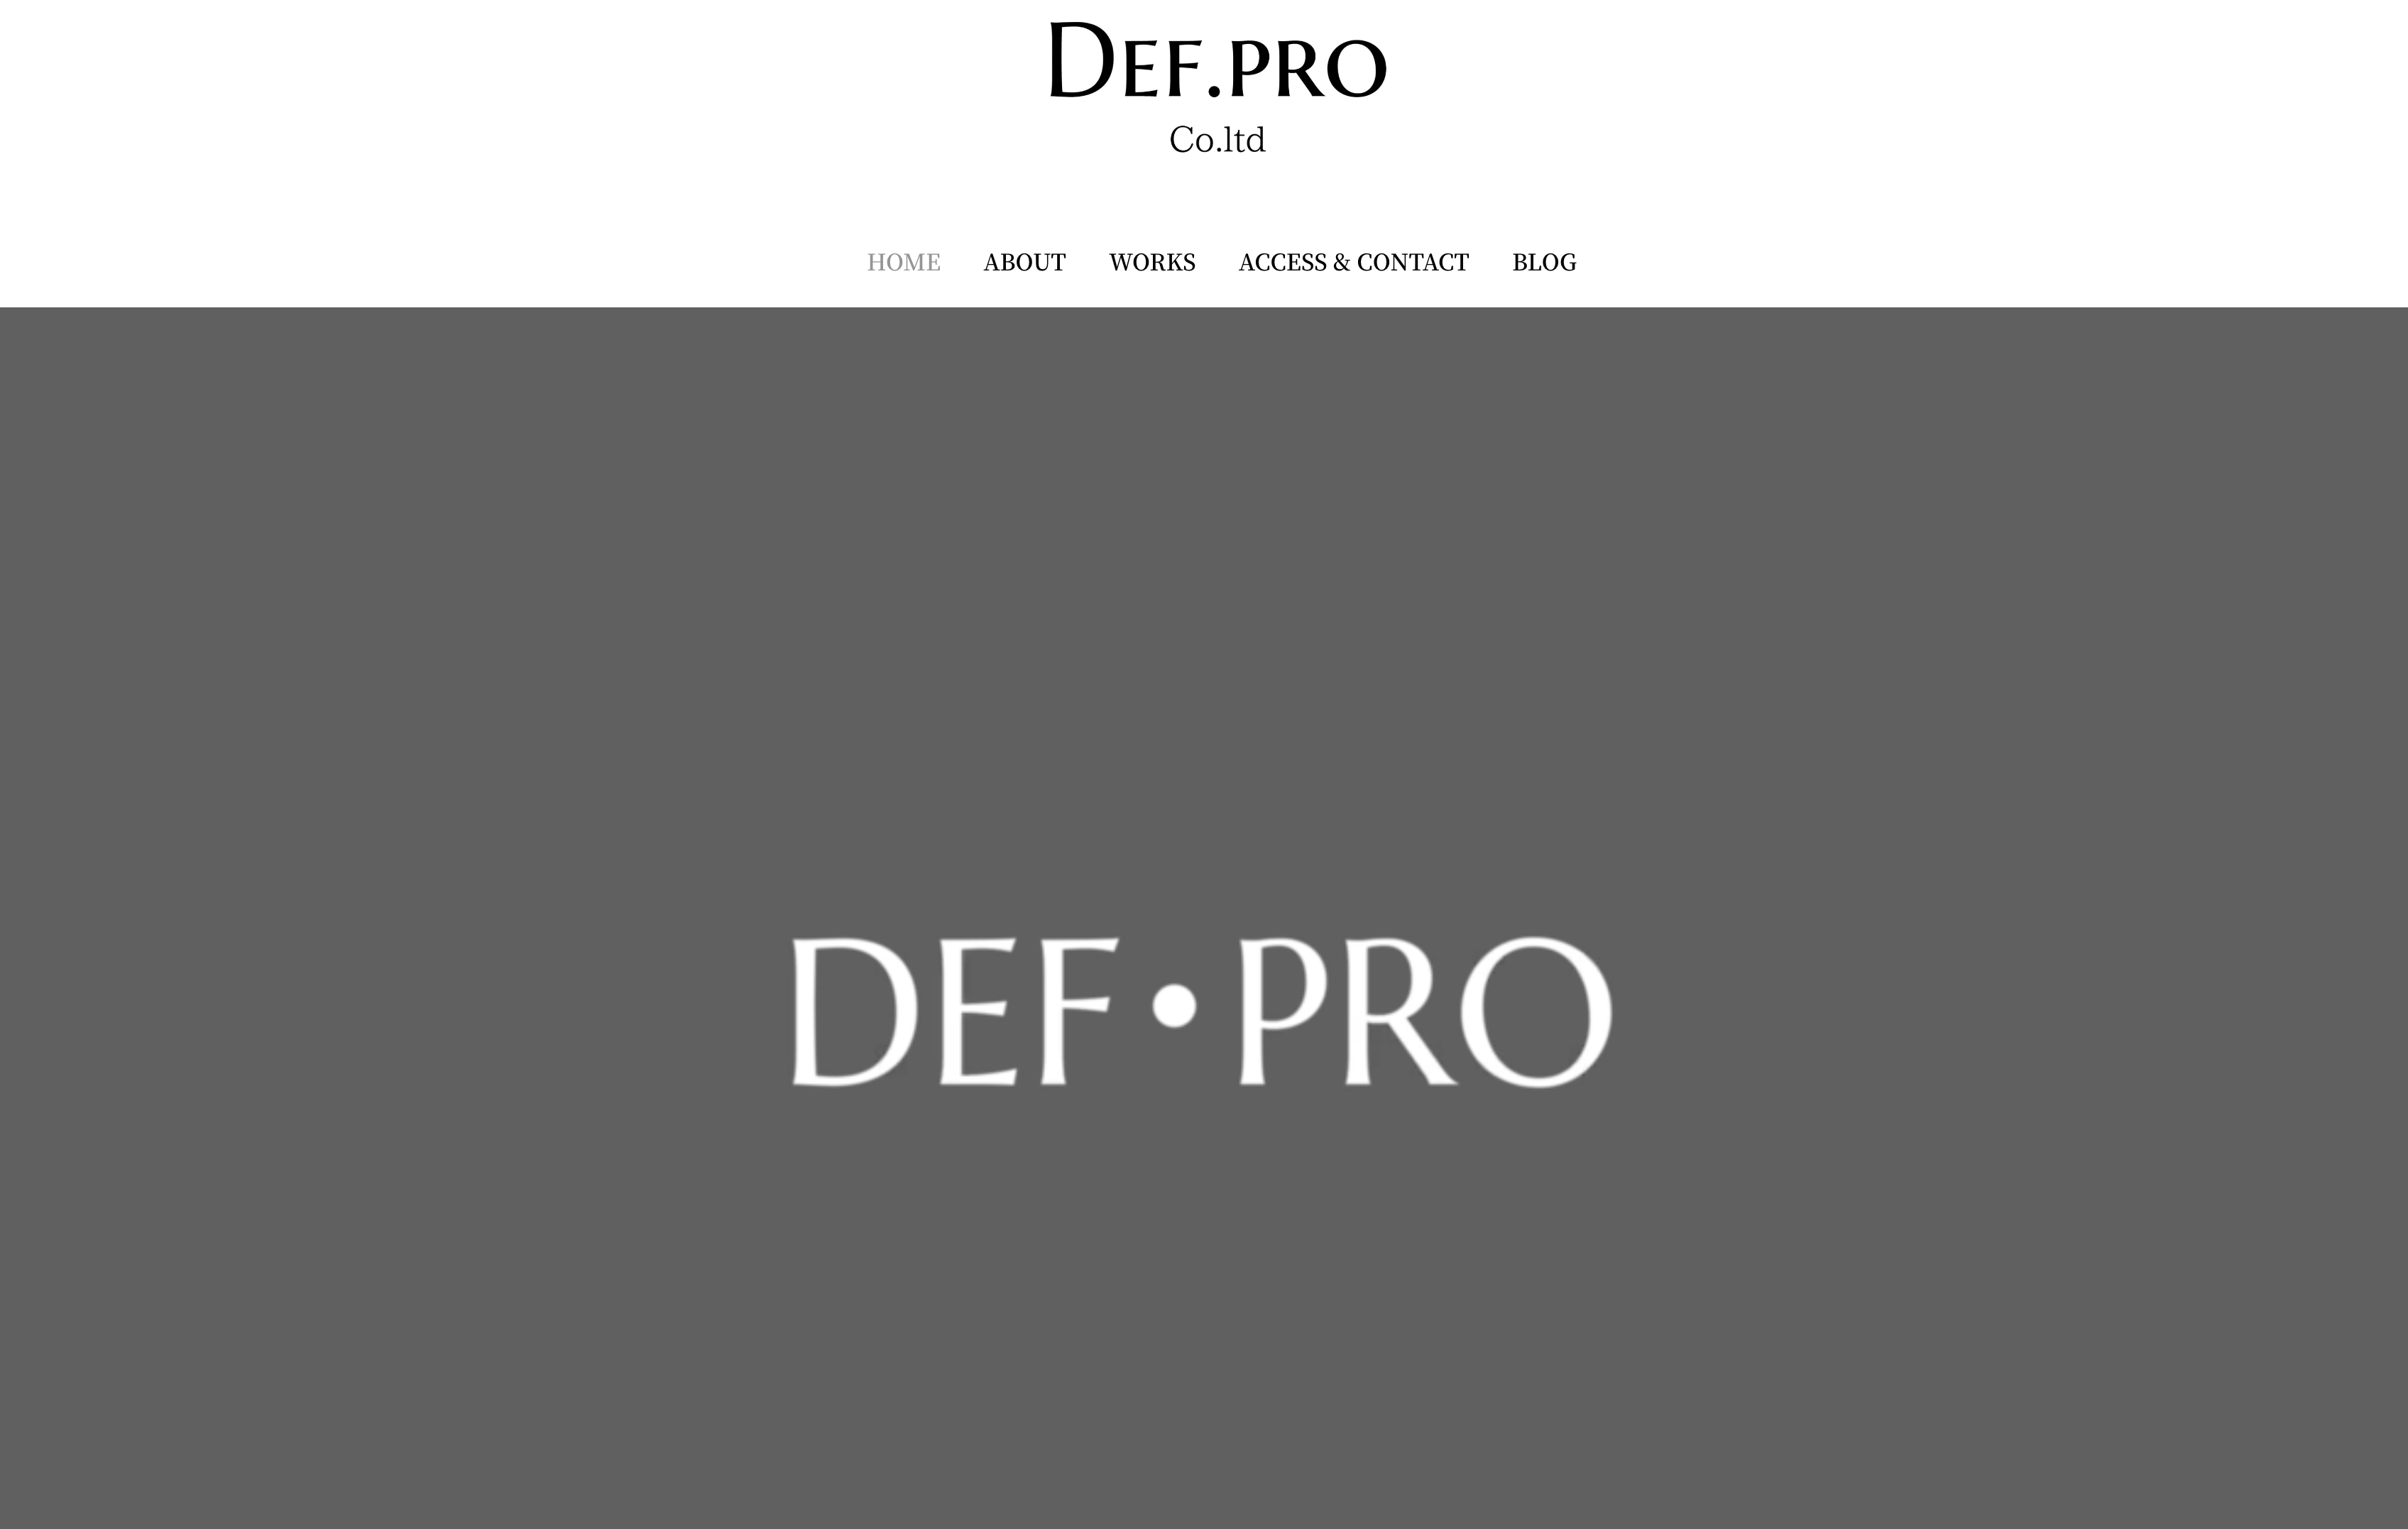 株式会社Def.proの株式会社Def・pro:商品撮影サービス